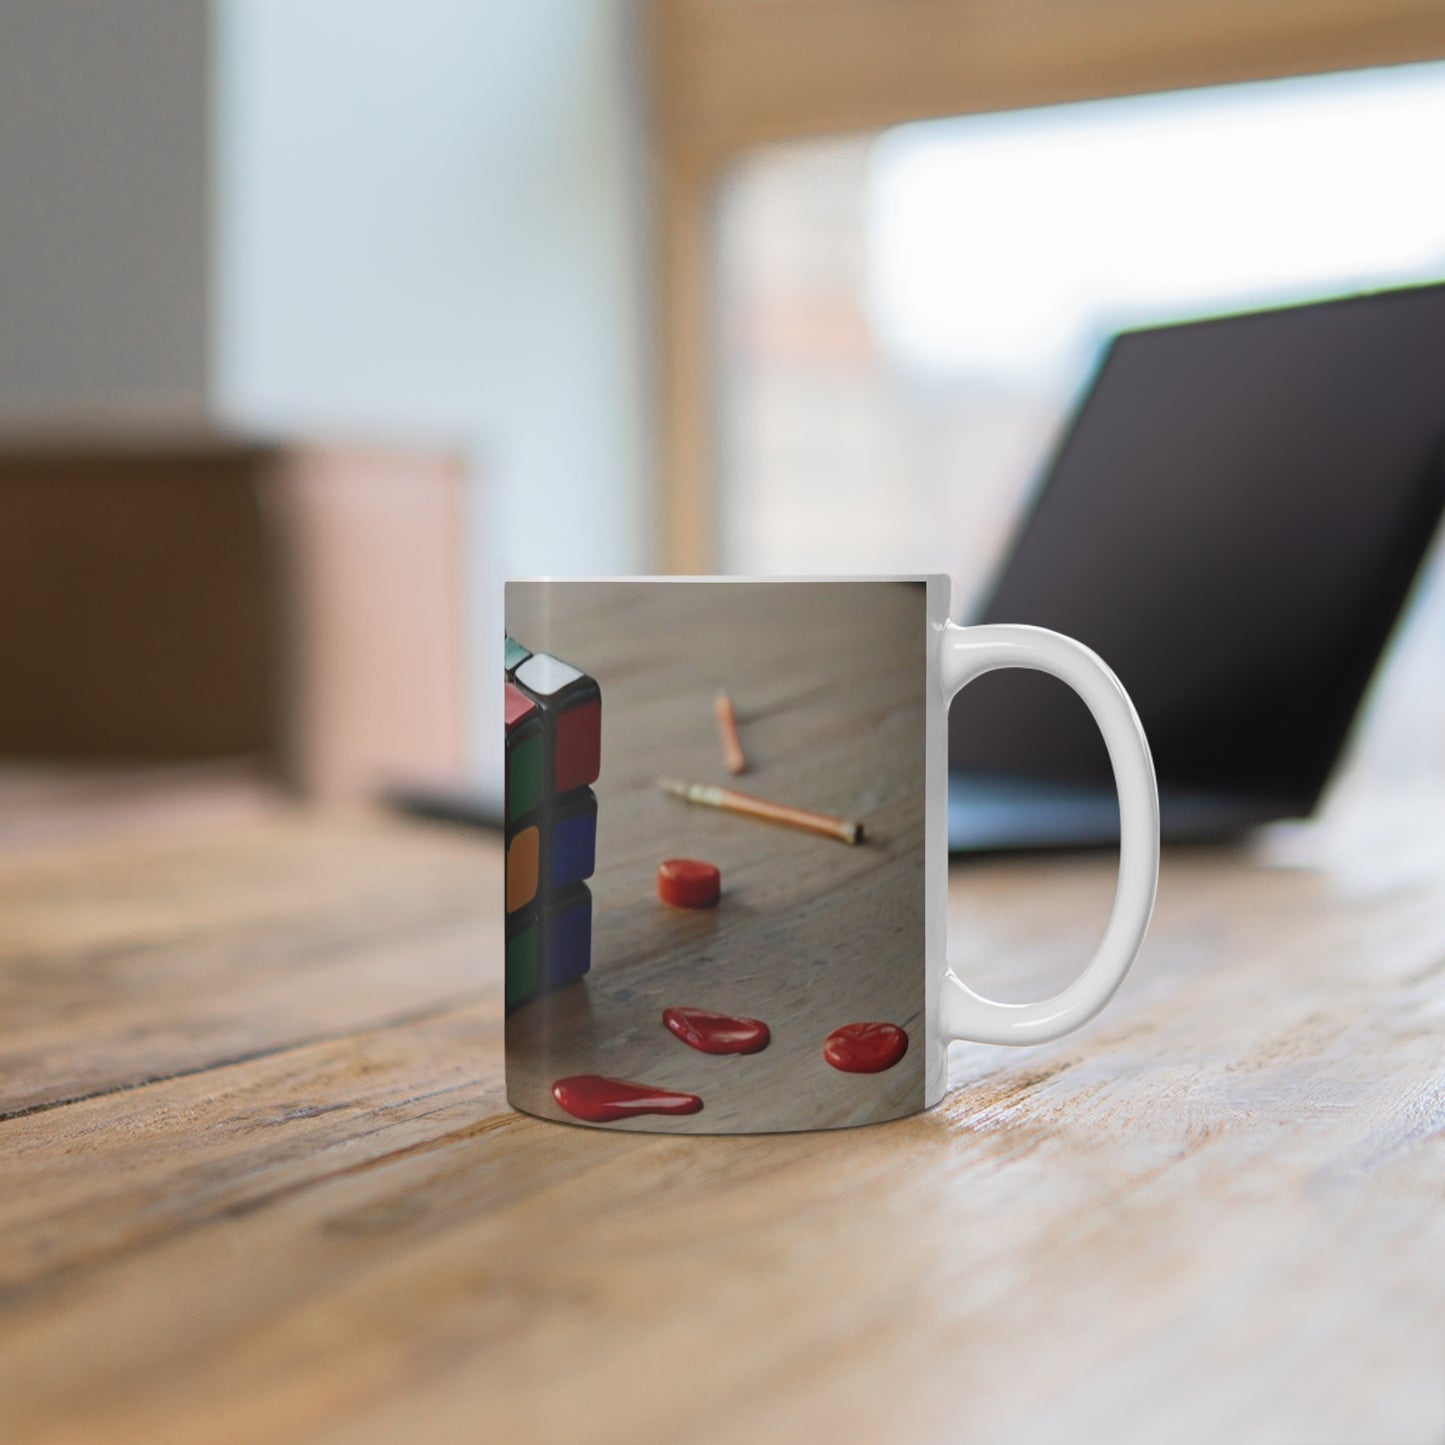 Rubik's Cube Mug - Ceramic Coffee Mug 11oz